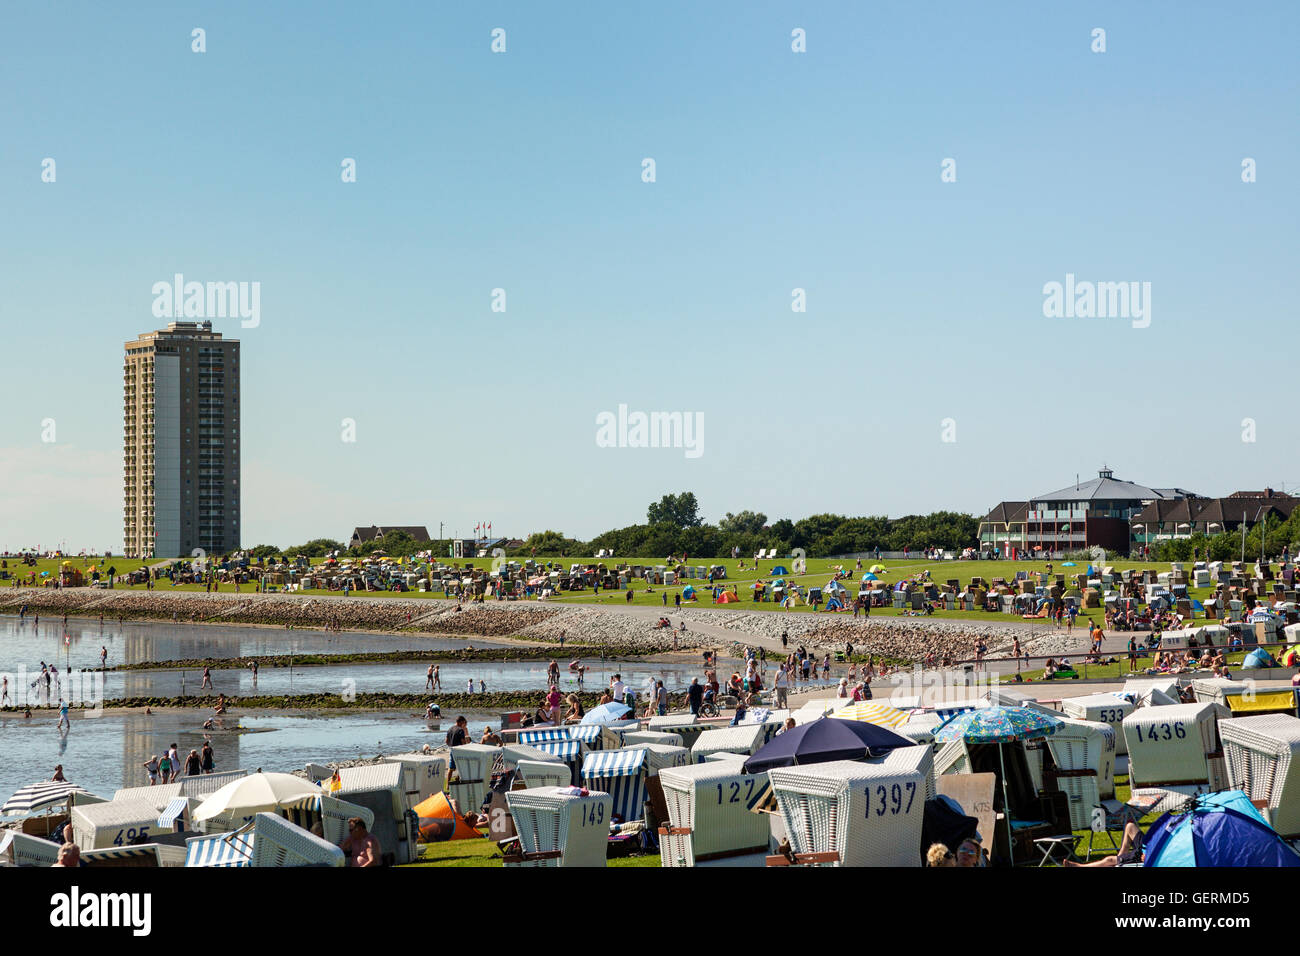 Büsum, Allemagne - 20 juillet 2016 : les personnes bénéficiant d'une chaude journée d'été à la plage de la mer du Nord Banque D'Images